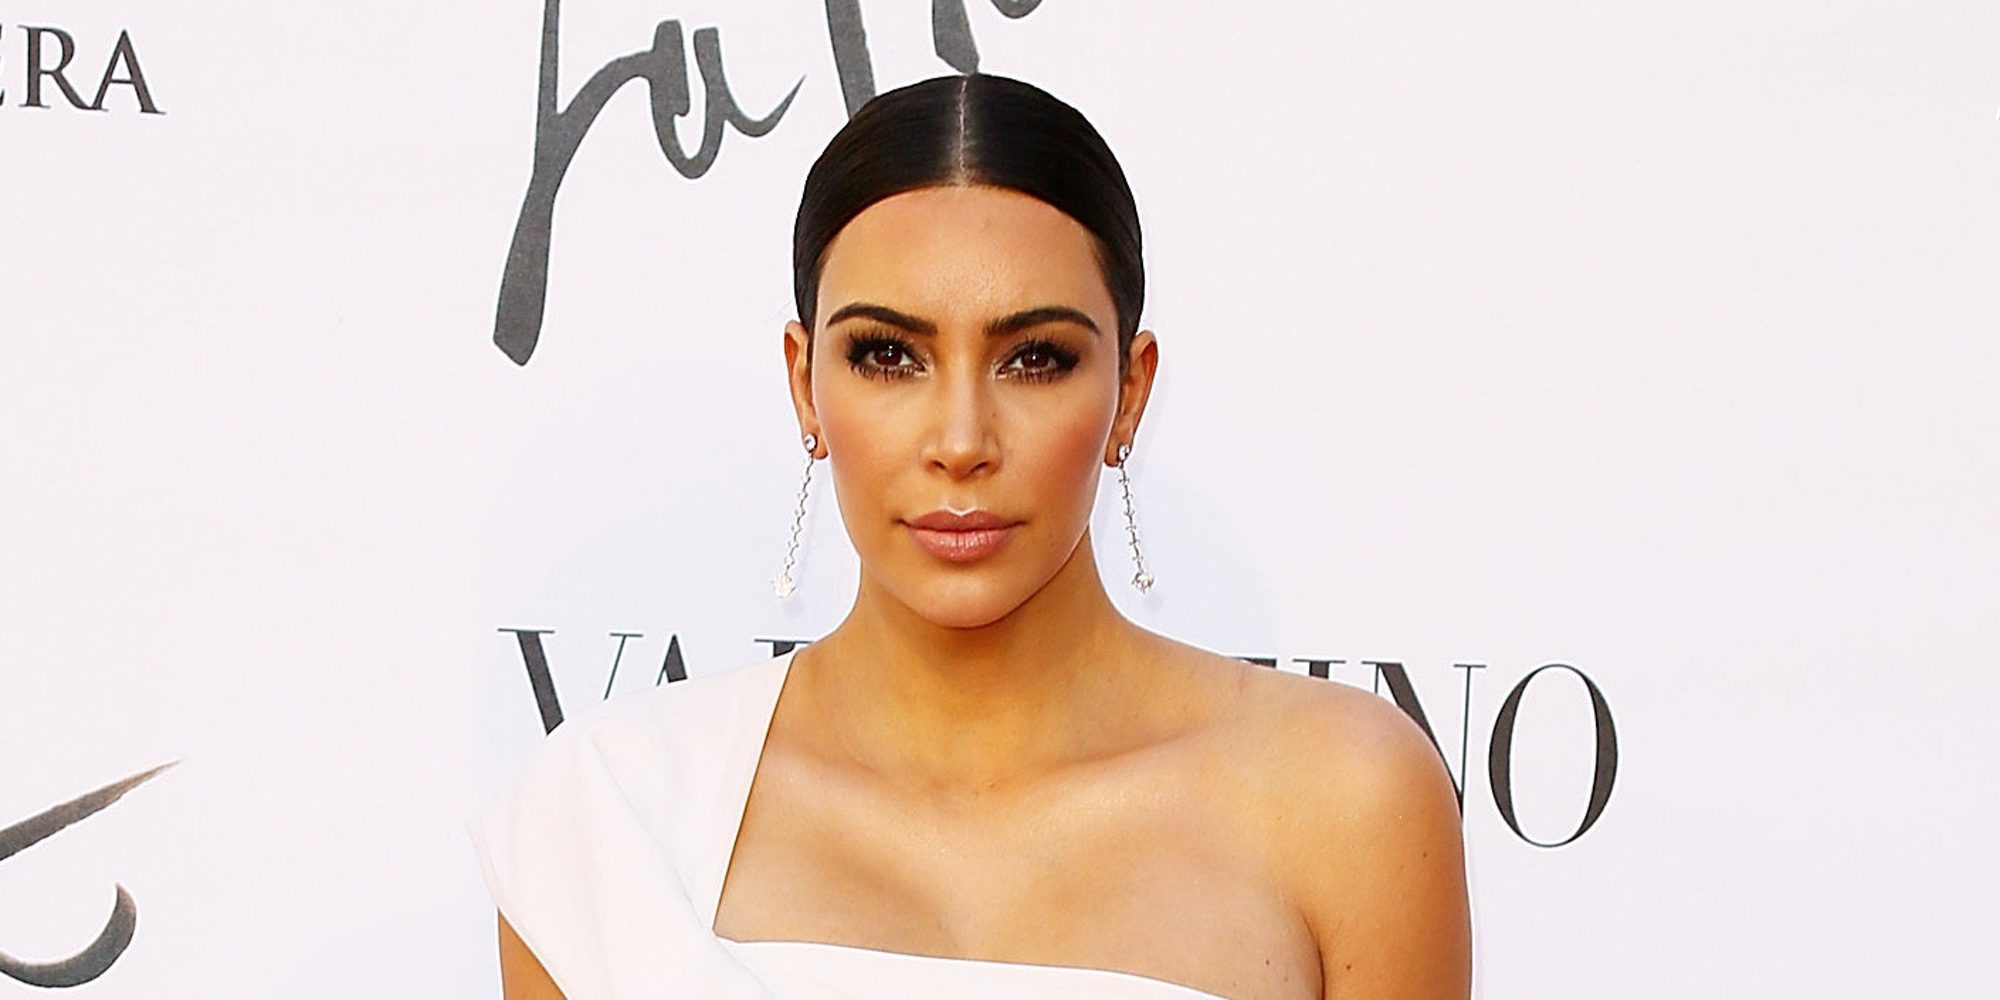 Kim Kardashian despide a su asistente personal Stephanie Shepherd tras cuatro intensos años juntas